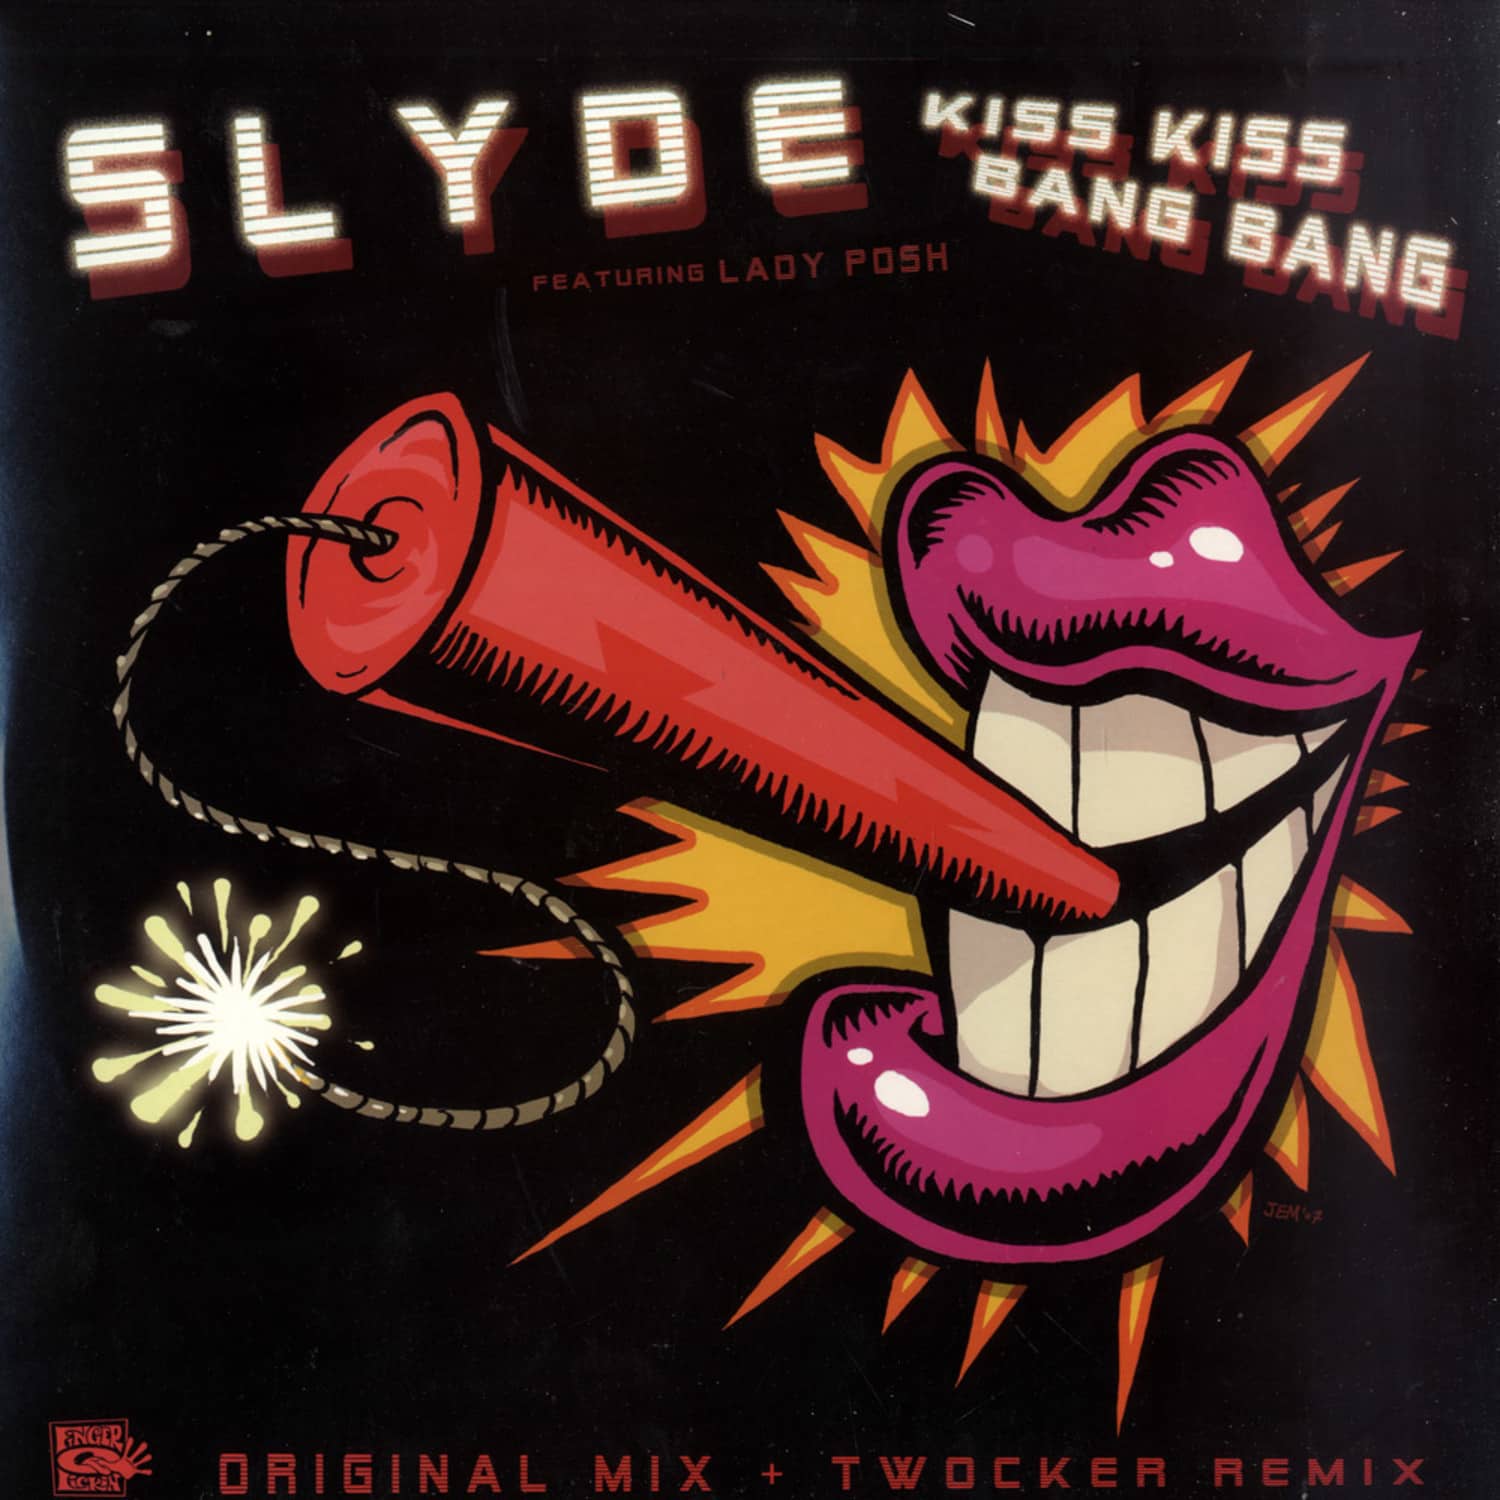 Slyde - KISS KISS BANG BANG